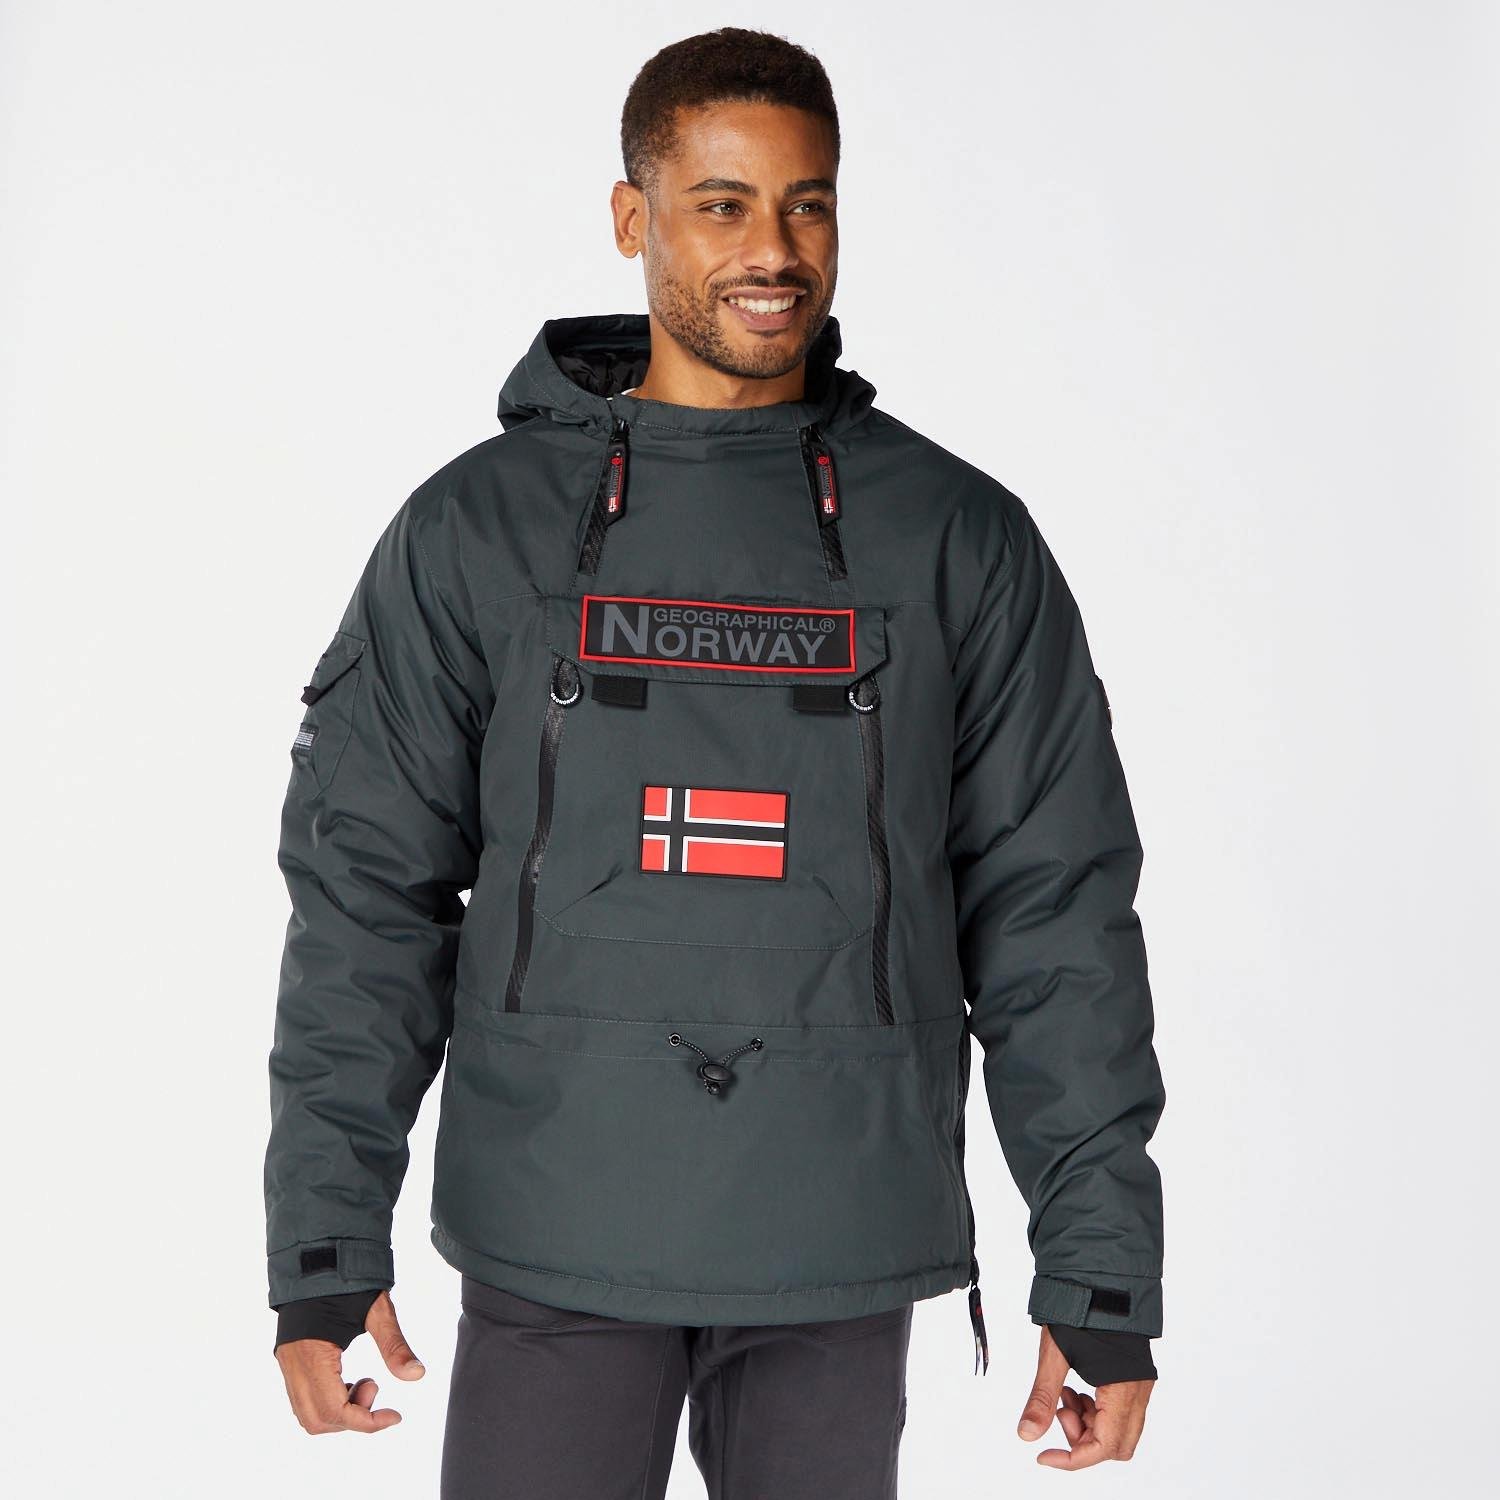 Geographical Norway, Benyamine ski jacket men Black black